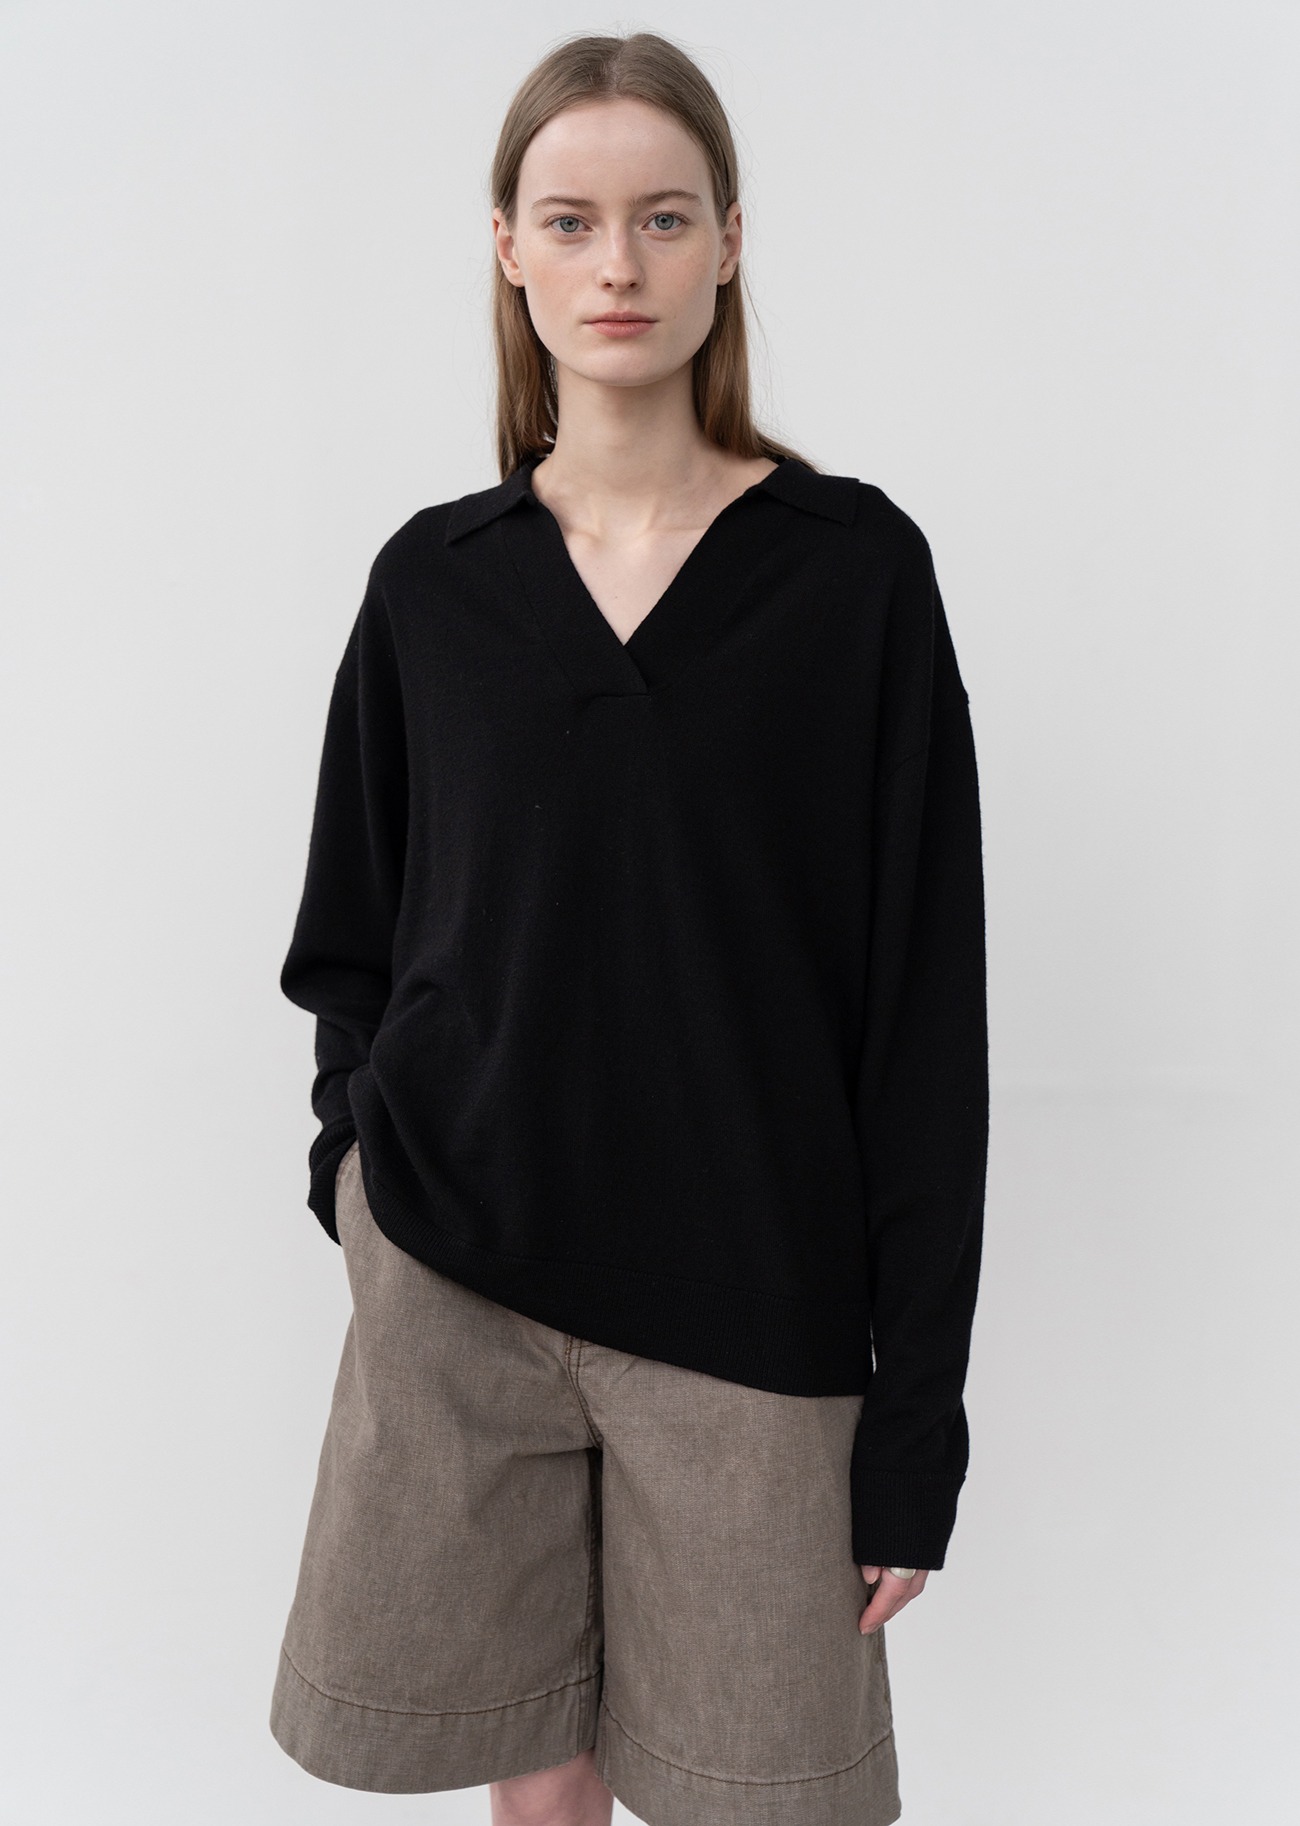 V-neck Collar Cashmere blended Knit Sweater - Black